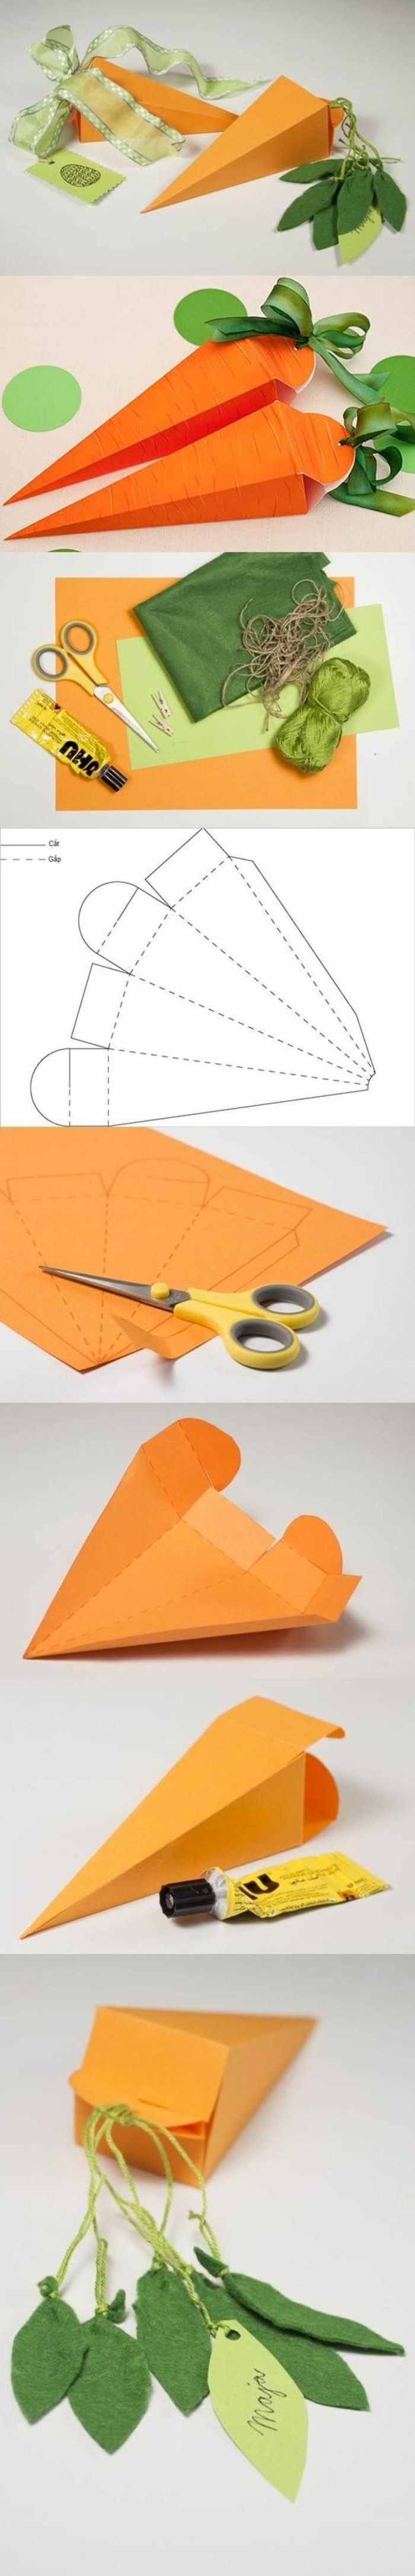 boite-origami-en-papier-tuto-pour-fabriquer-une-boite-en-forme-de-carotte-une-boite-cadeau-convenable-pour-paques